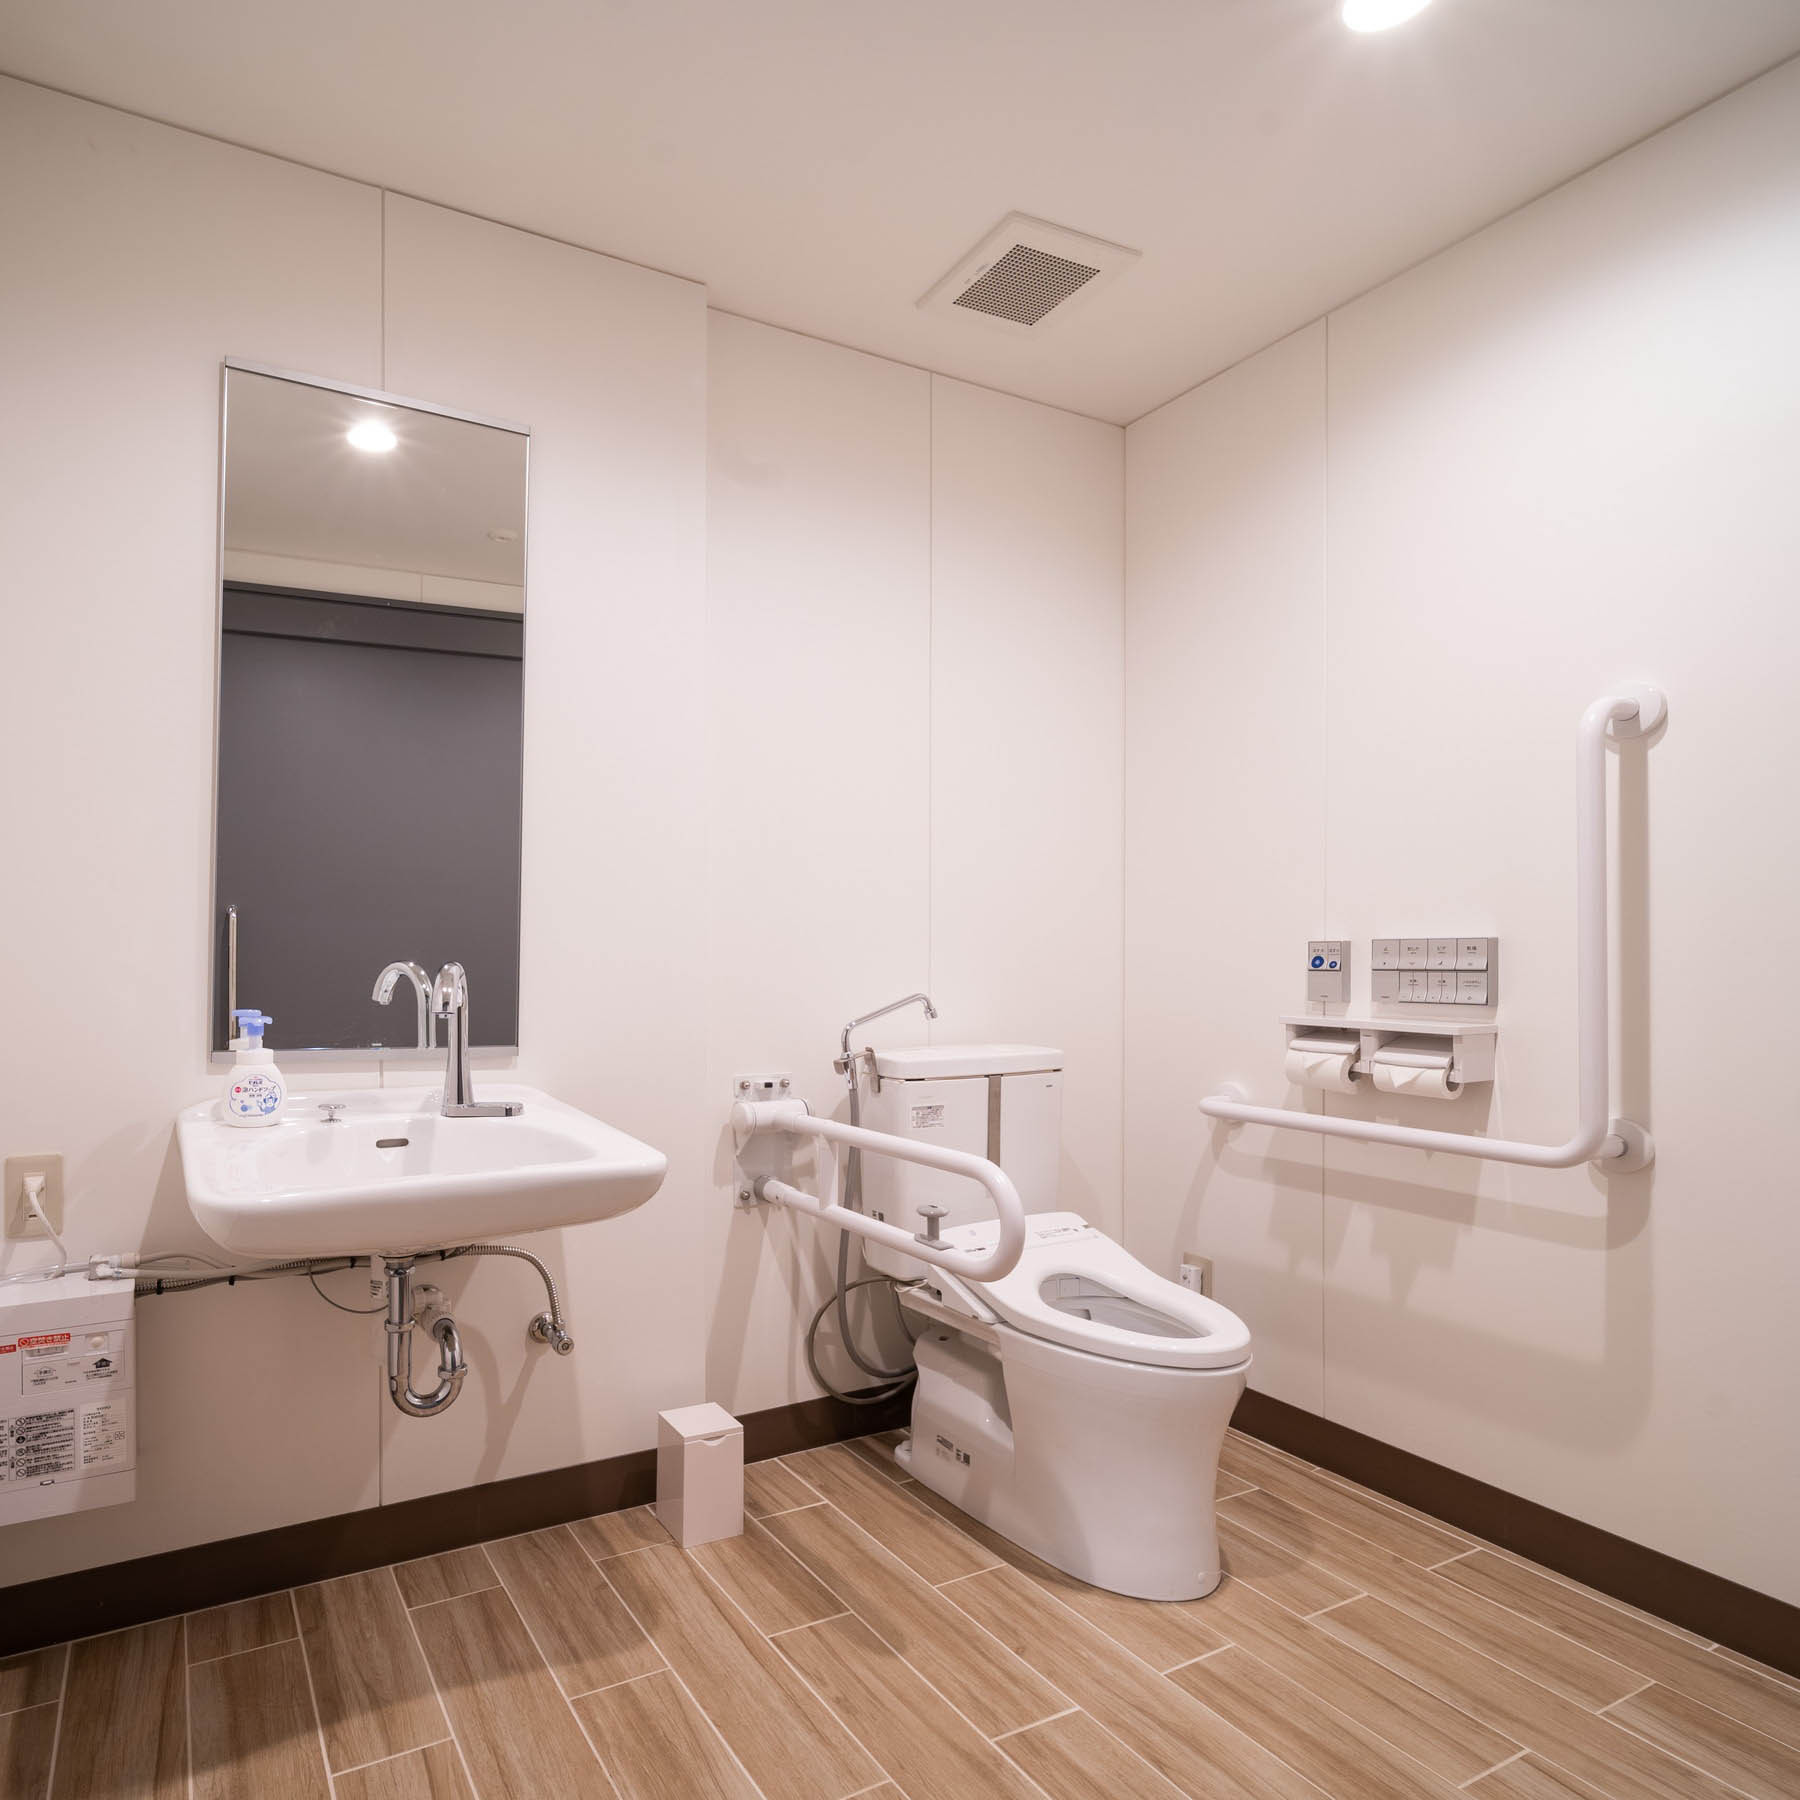 1階のフり−スぺ−スにあるトイレはバリアフリーで、車椅子でも入れる広々スぺ−ス。